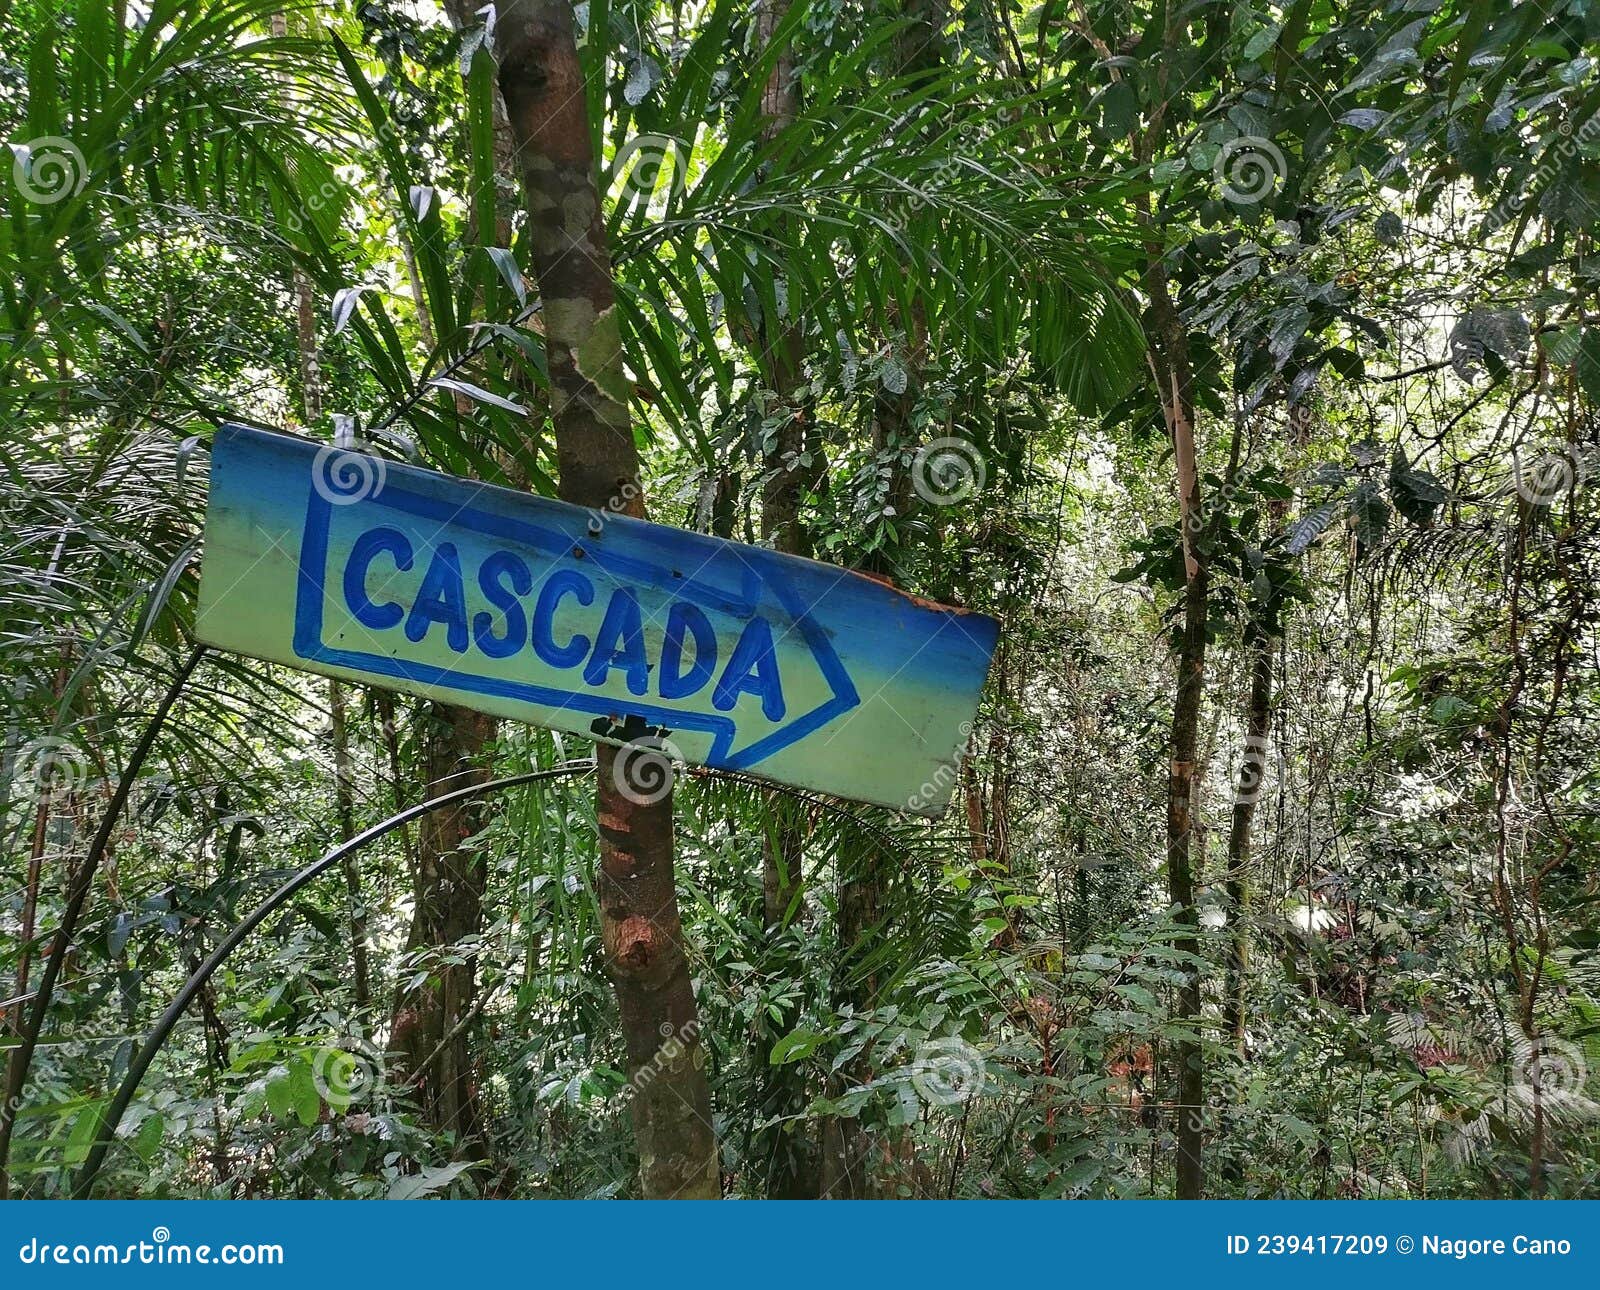 cascada sign in el cielo jungle in capurgana. choco. colombia.